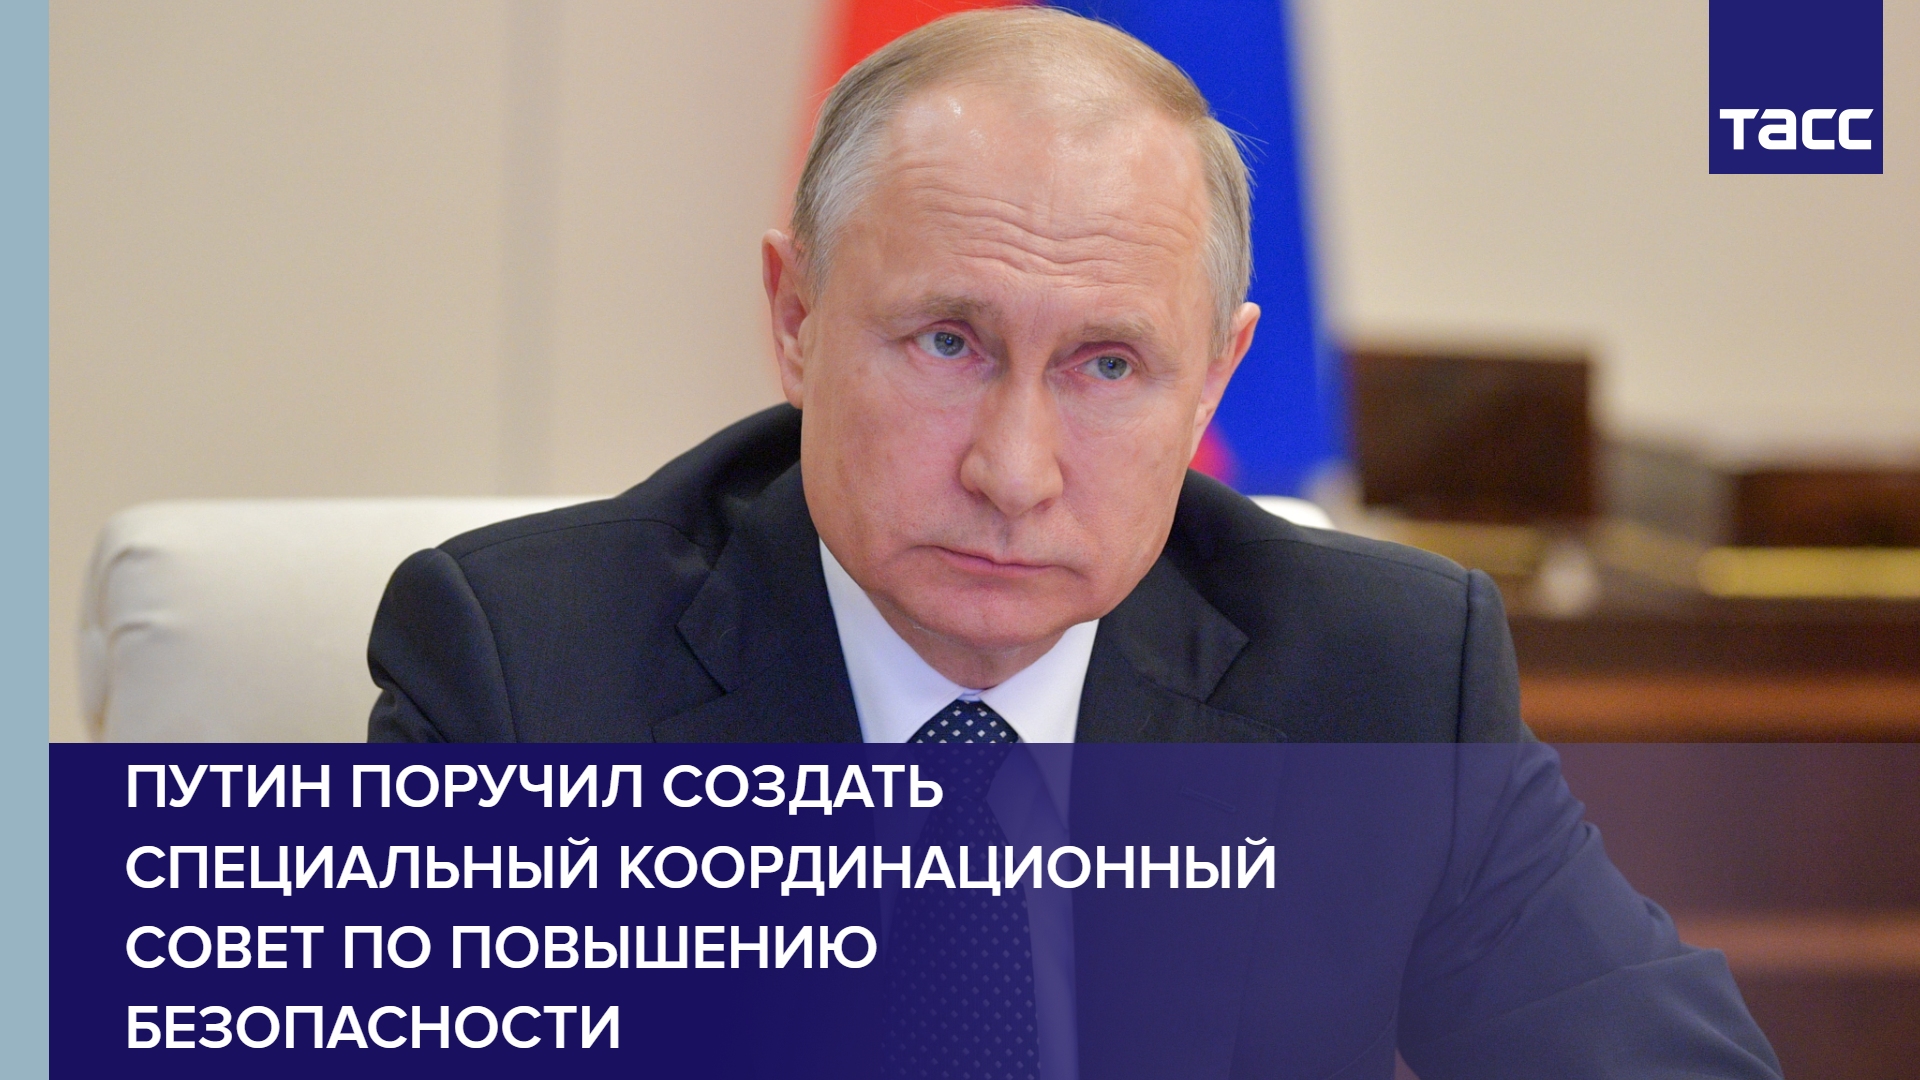 Путин поручил создать специальный координационный совет по повышению безопасности